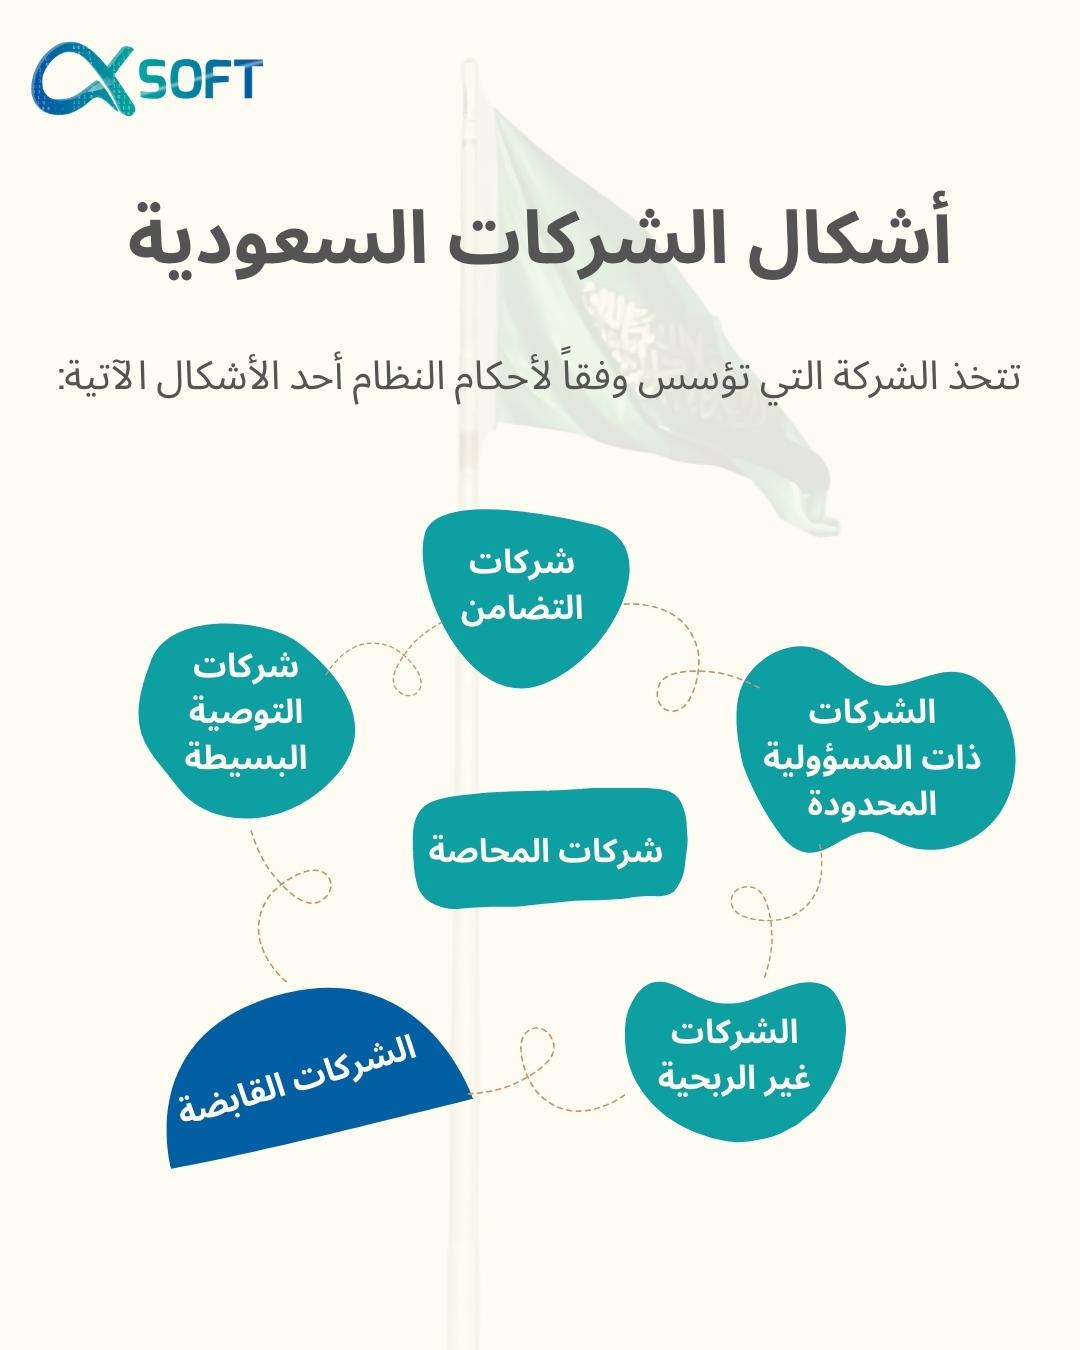 نظام الشركات السعودية بين الجديد والقديم